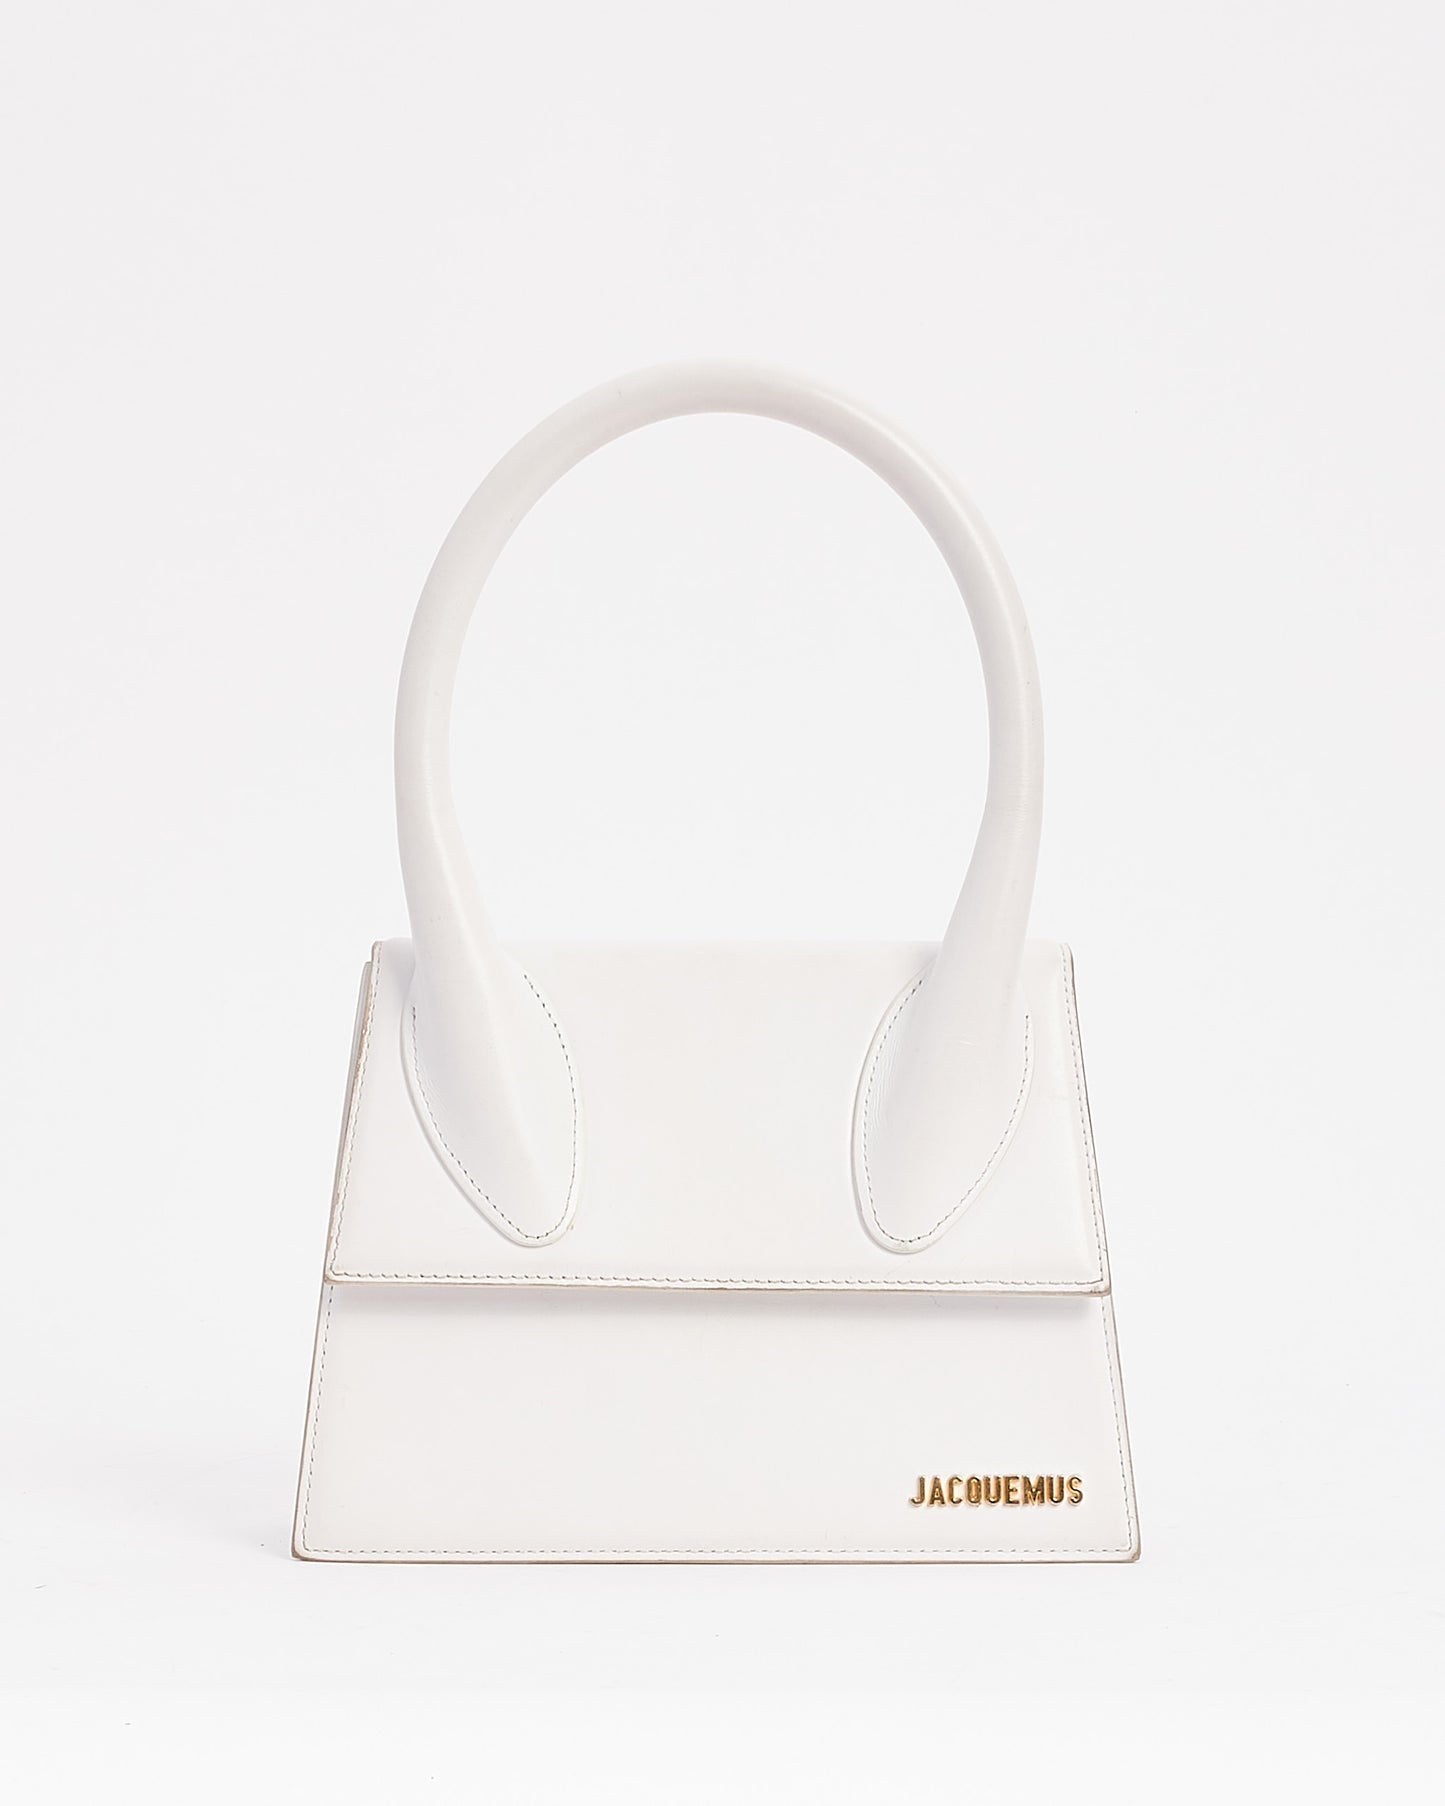 Jacquemus White Leather Le Papier Le Grand Chiquito Bag